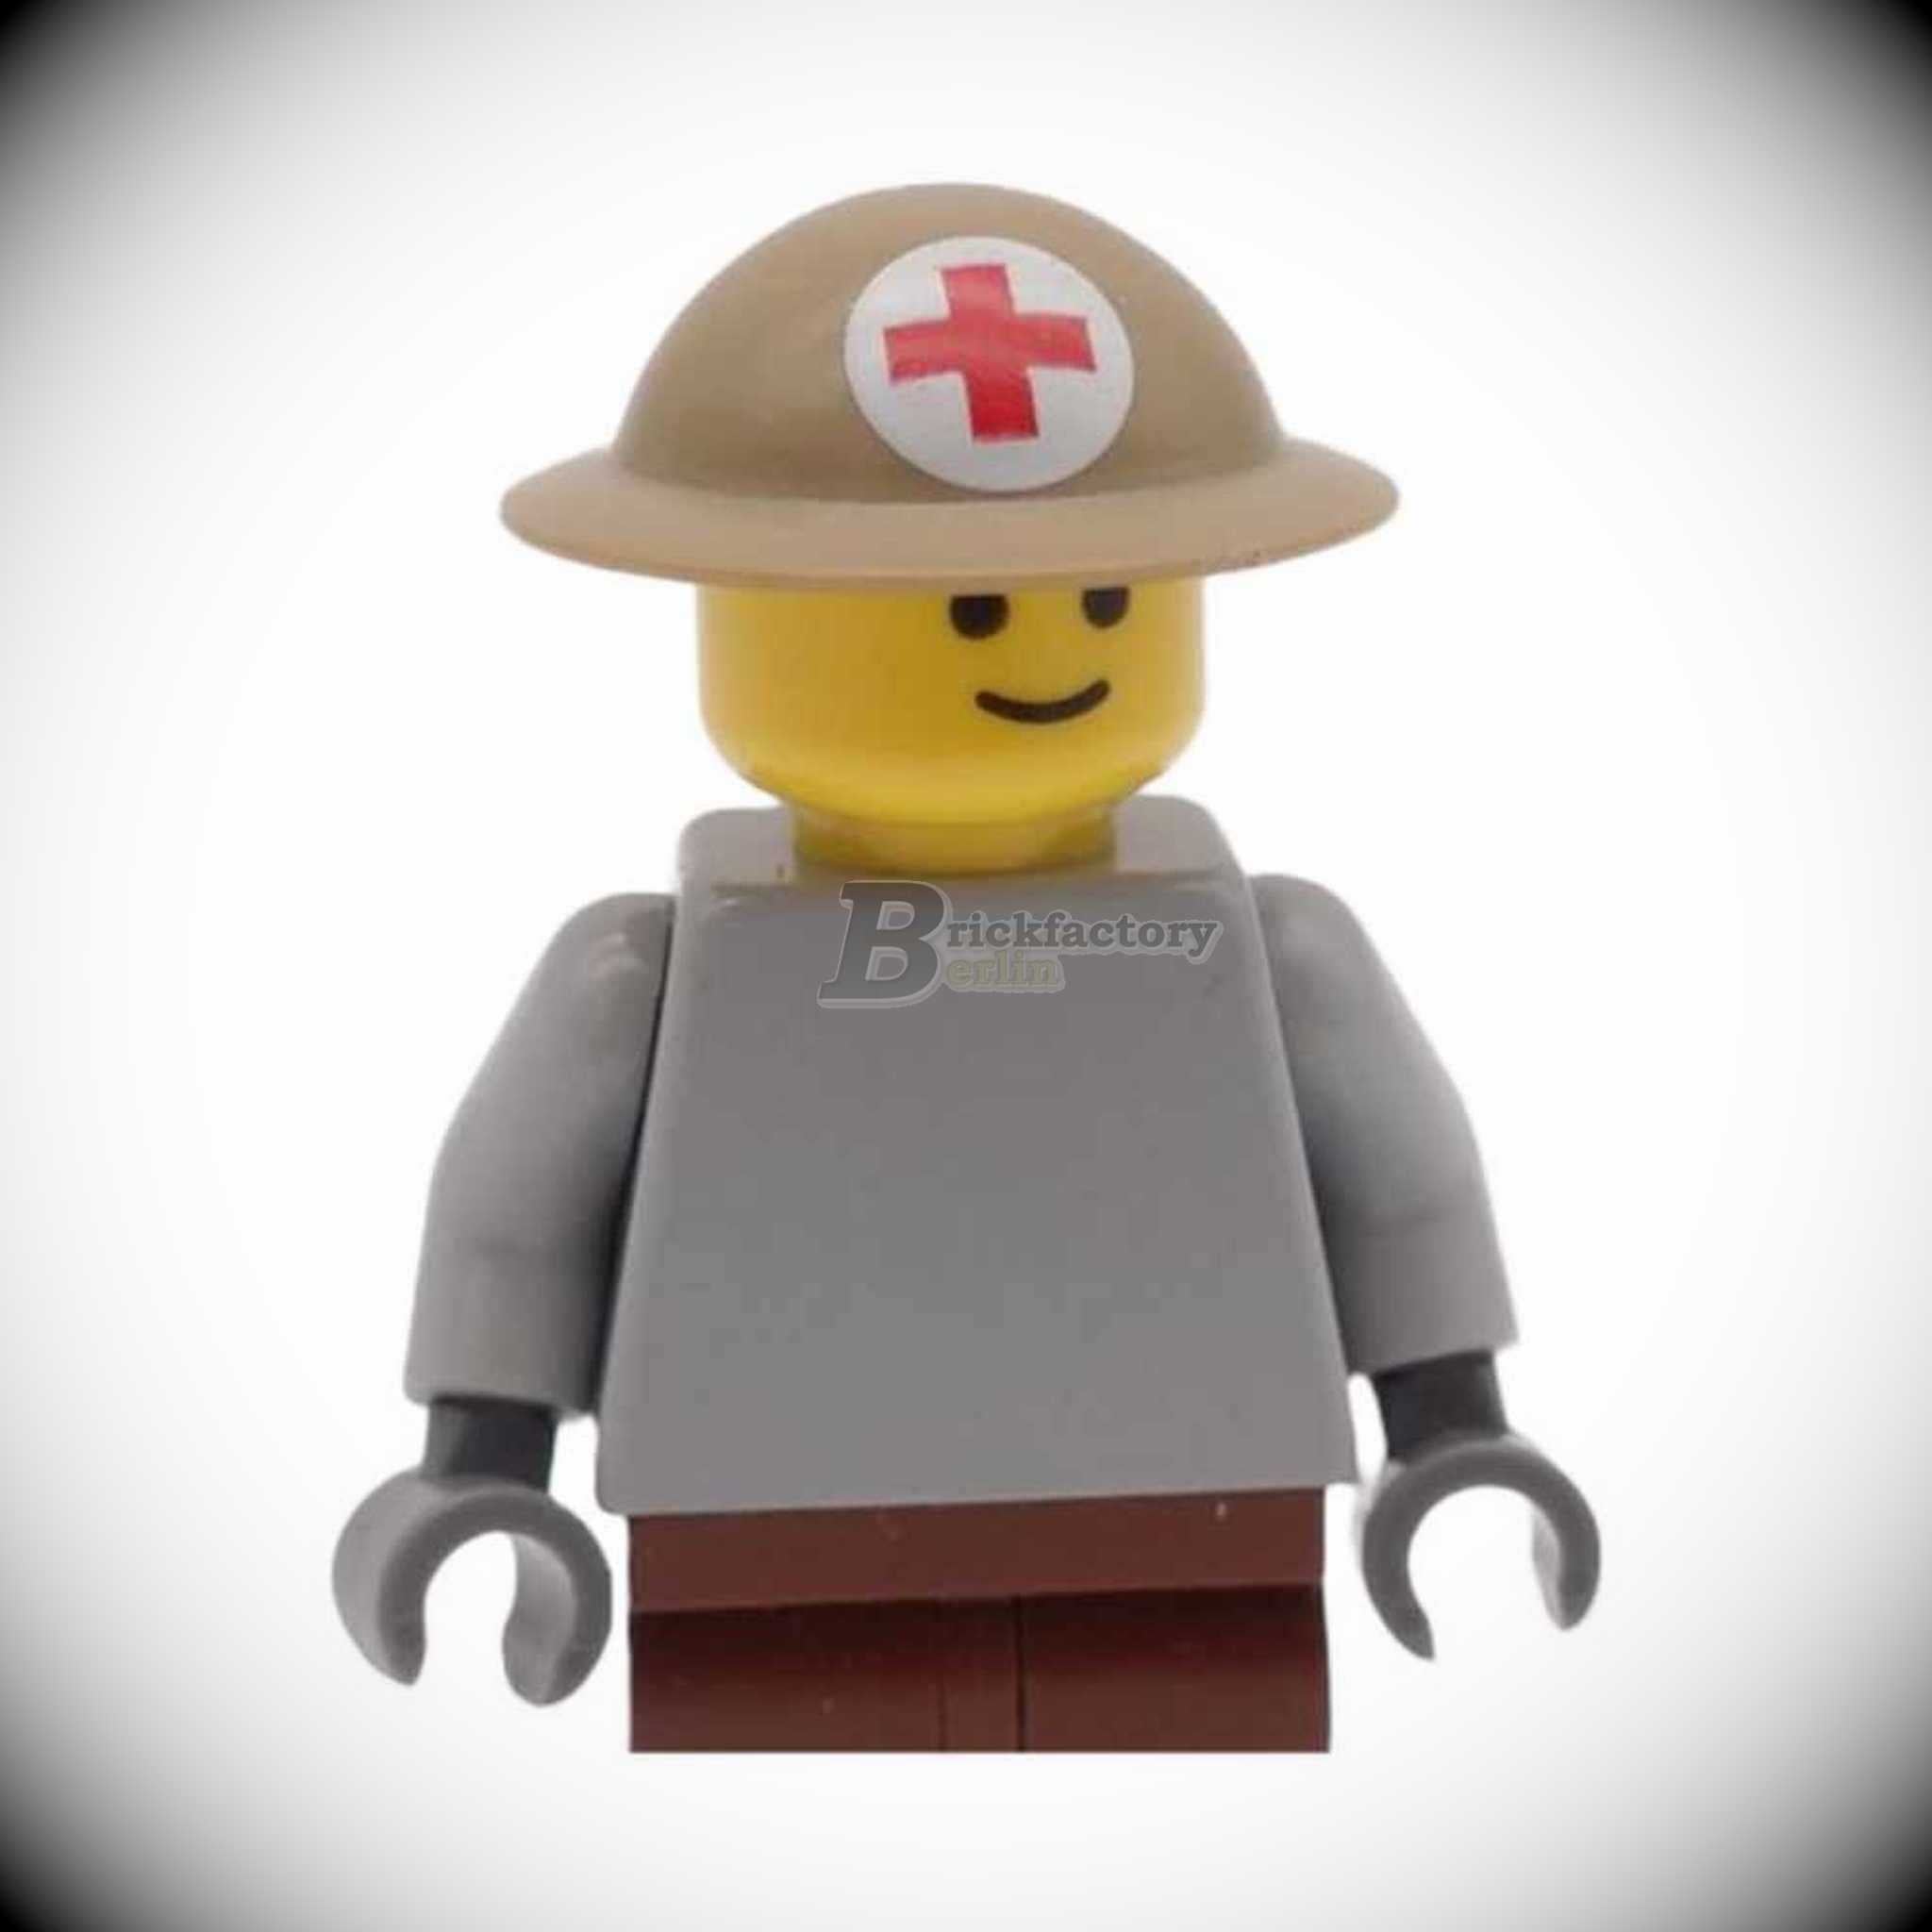 BF-0505 -WWII Helmet Red Cross Brodie England (Brickfactory)